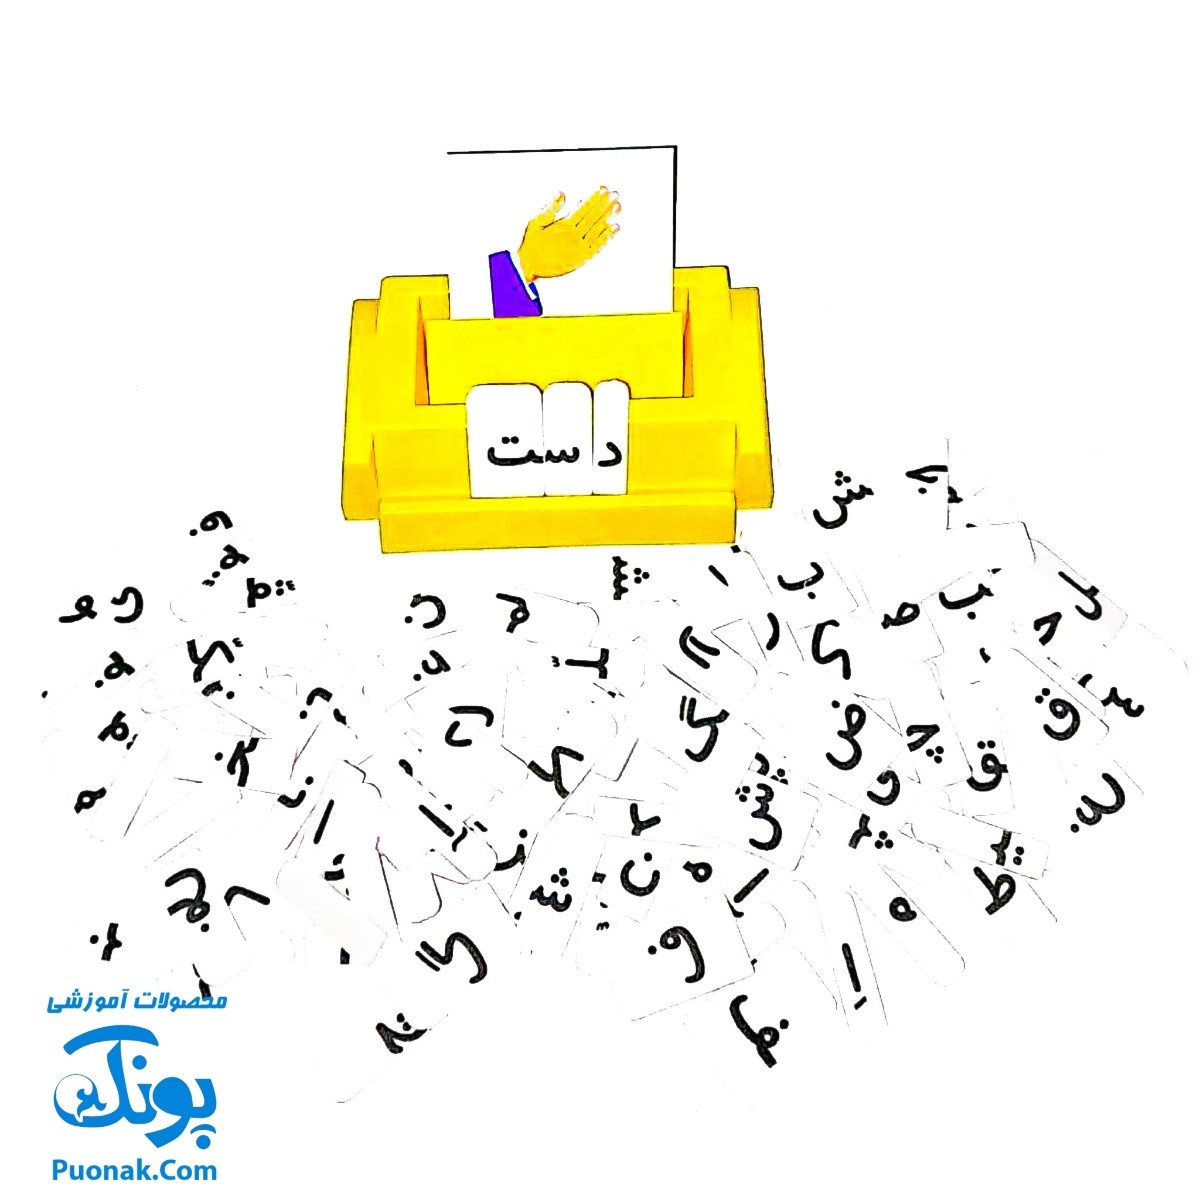 بازی آموزشی الفبای فارسی بازیتا (الفبای فومی به همراه کارت تصاویر و صفحه جایگذاری) آموزش بخوانیم و بنویسیم فارسی اول دبستان در قالب یک بازی جذاب و آموزشی